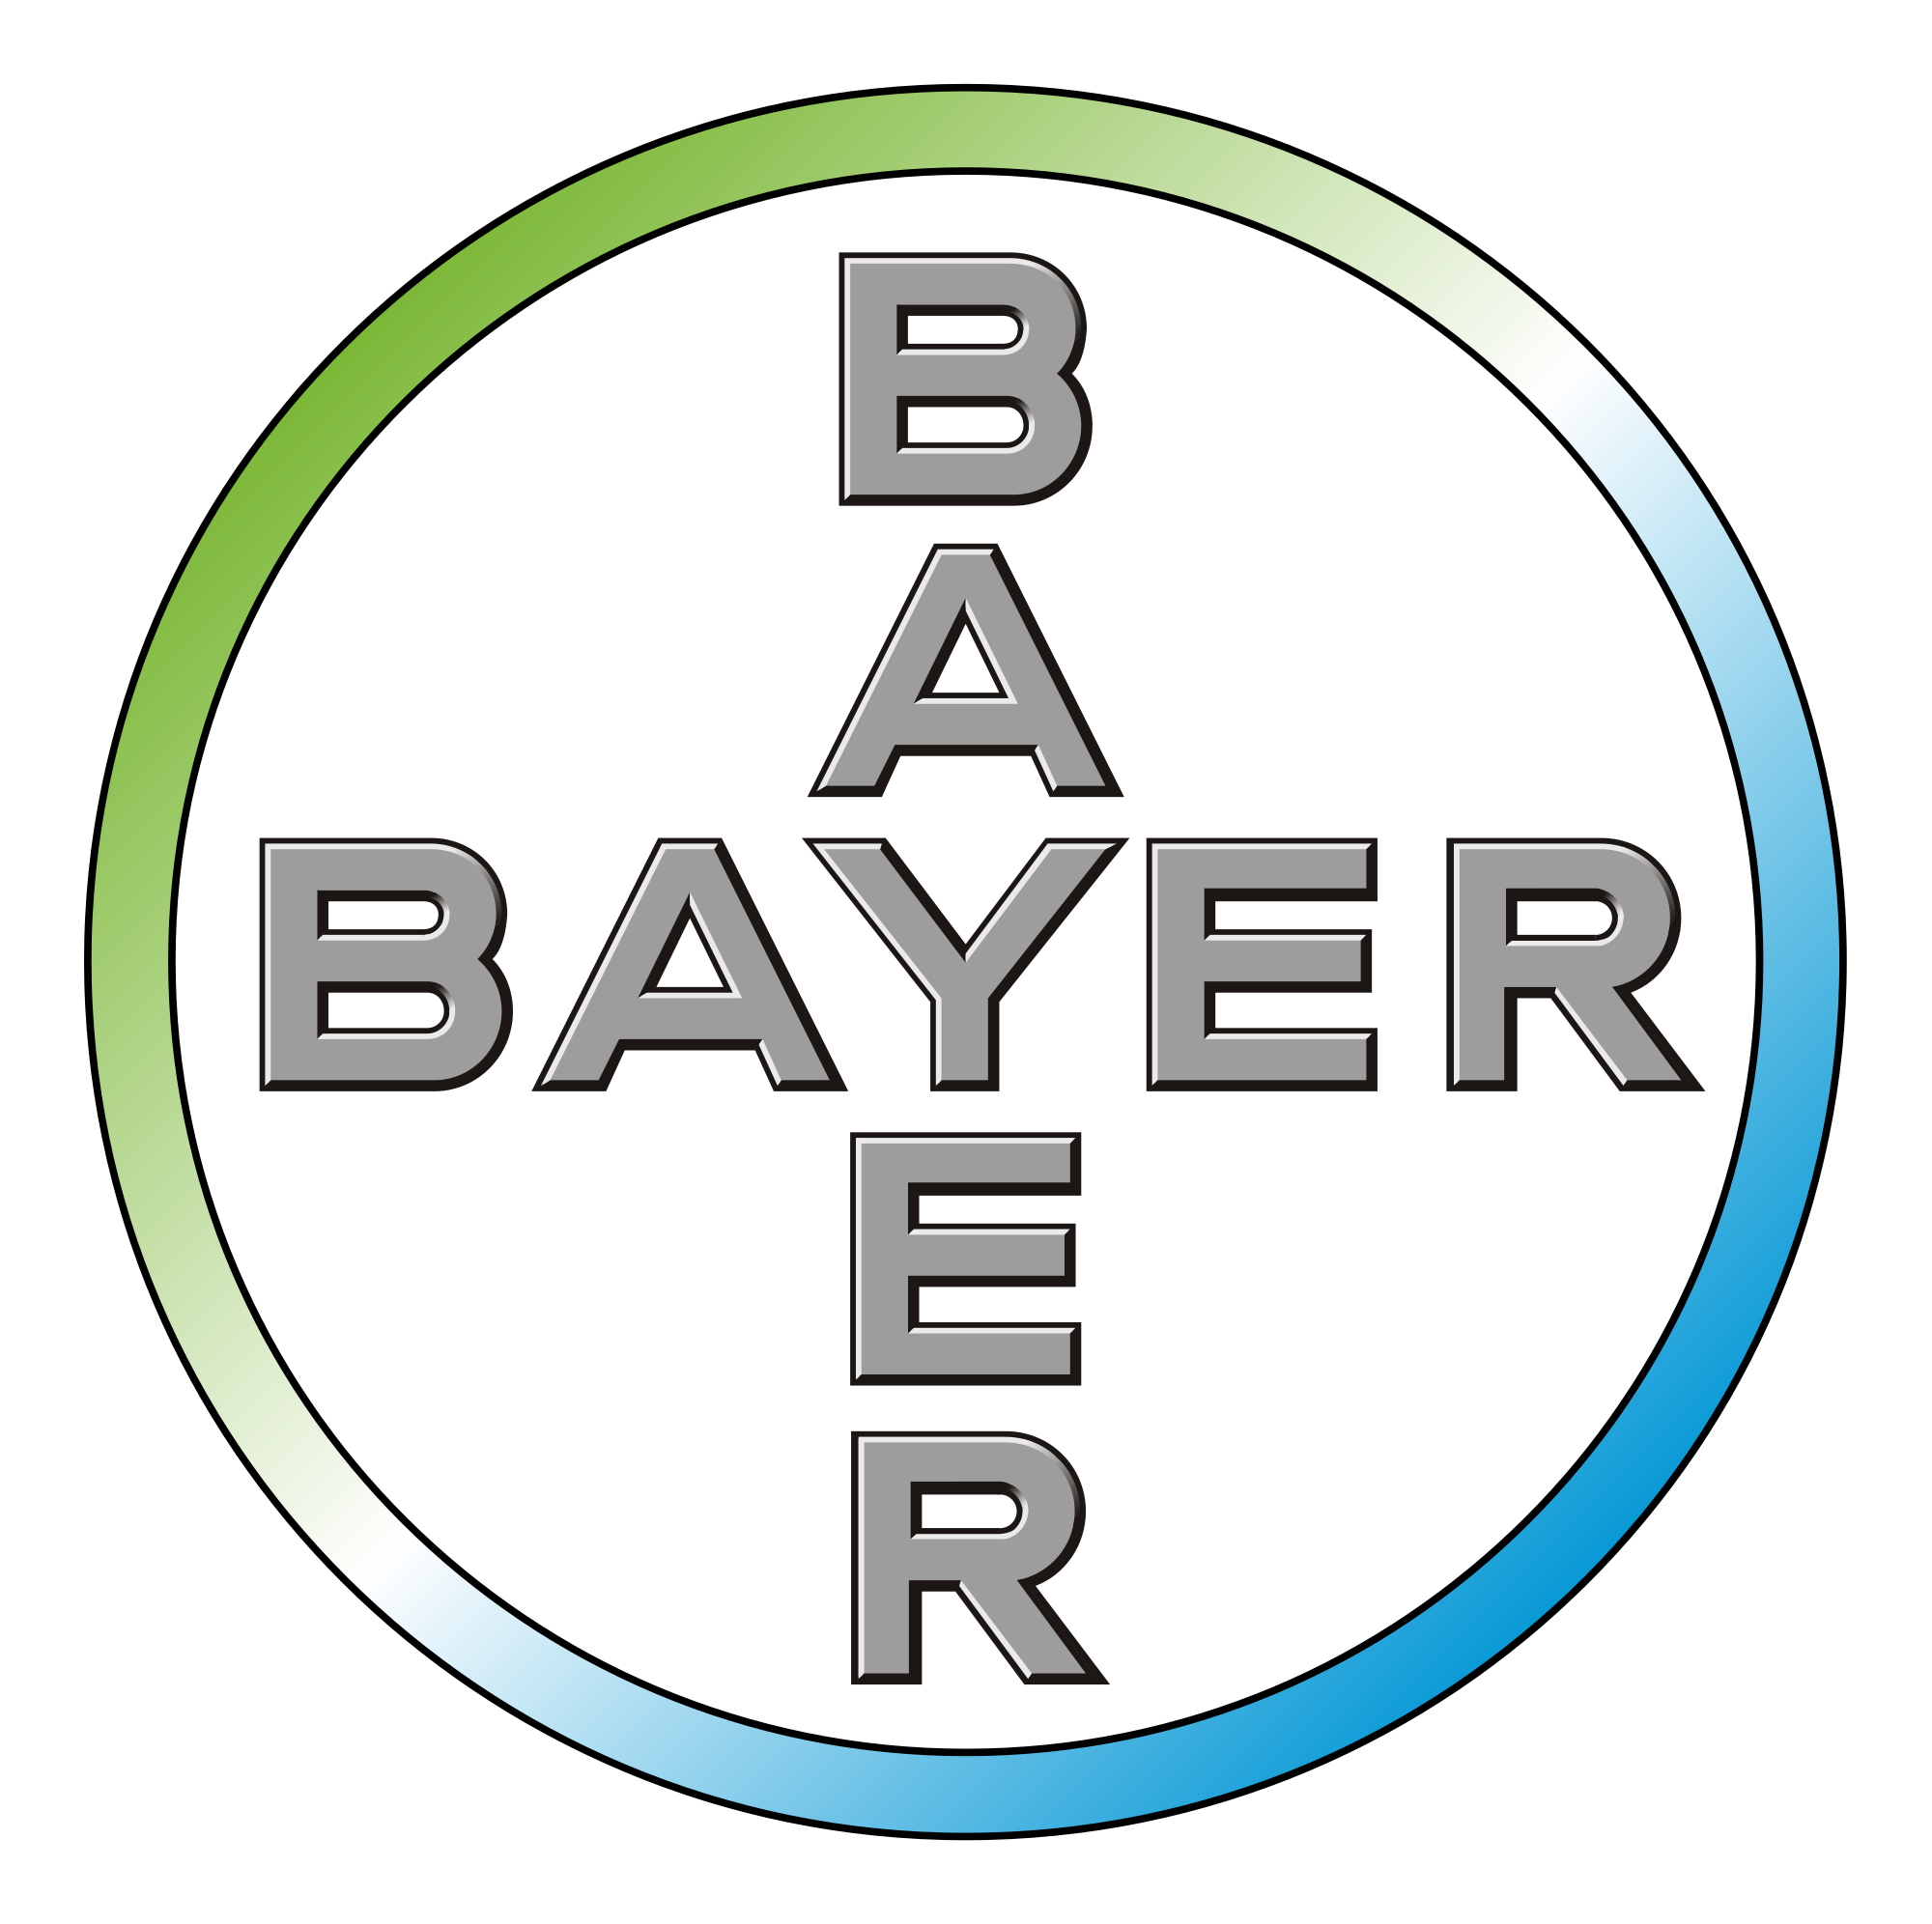 Bayer_logo